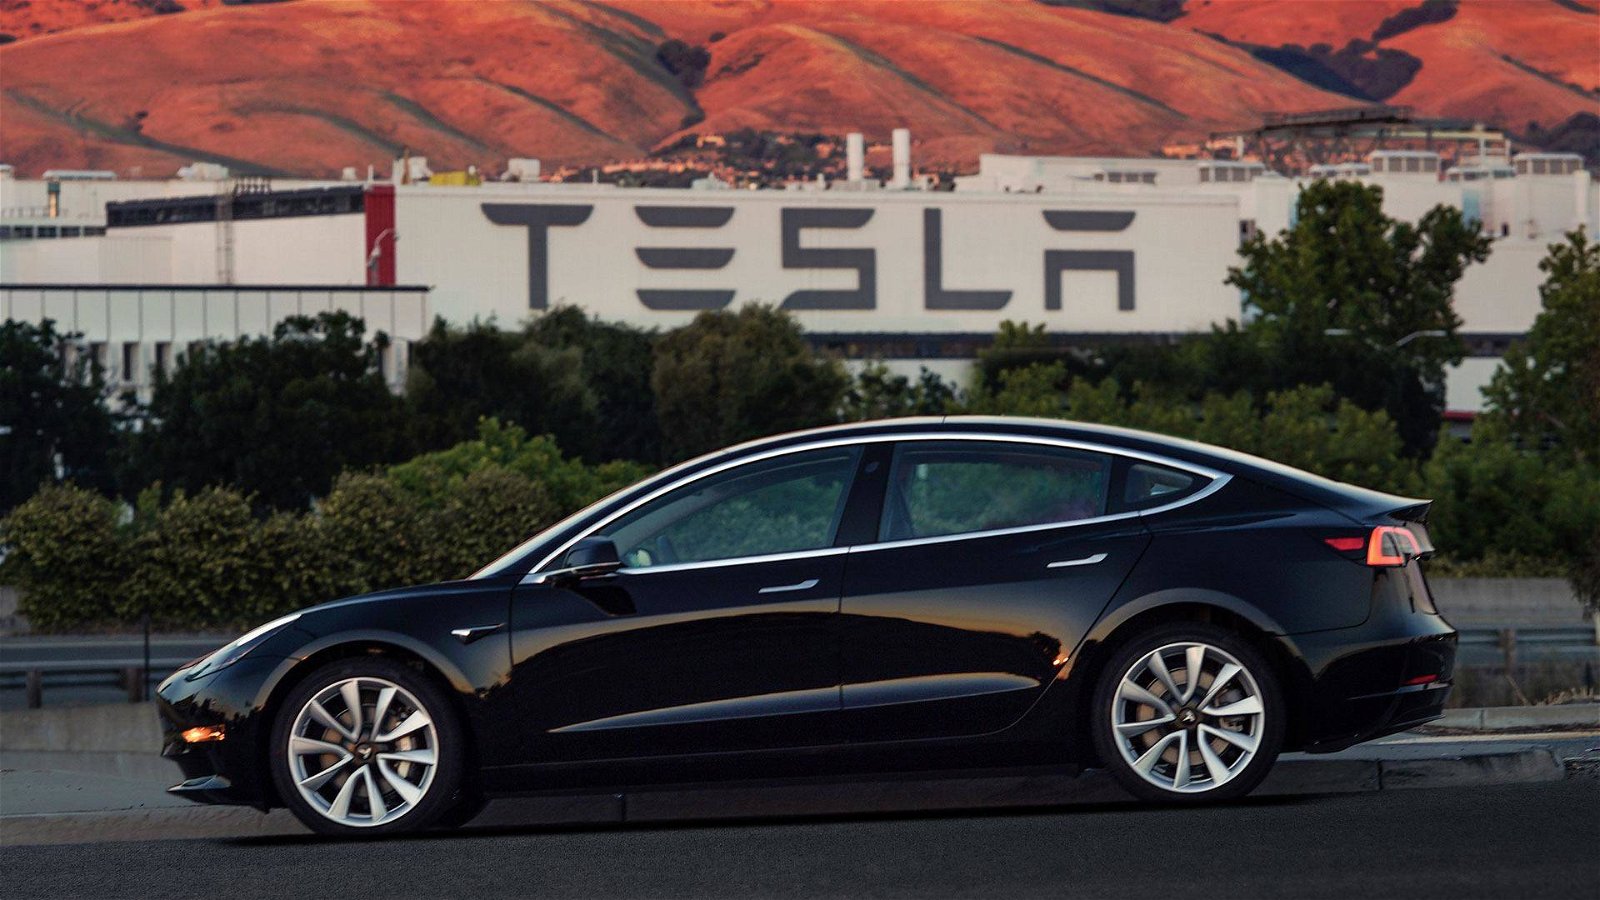 Immagine di Tesla chiuderà gran parte dei suoi negozi, le auto saranno acquistabili online